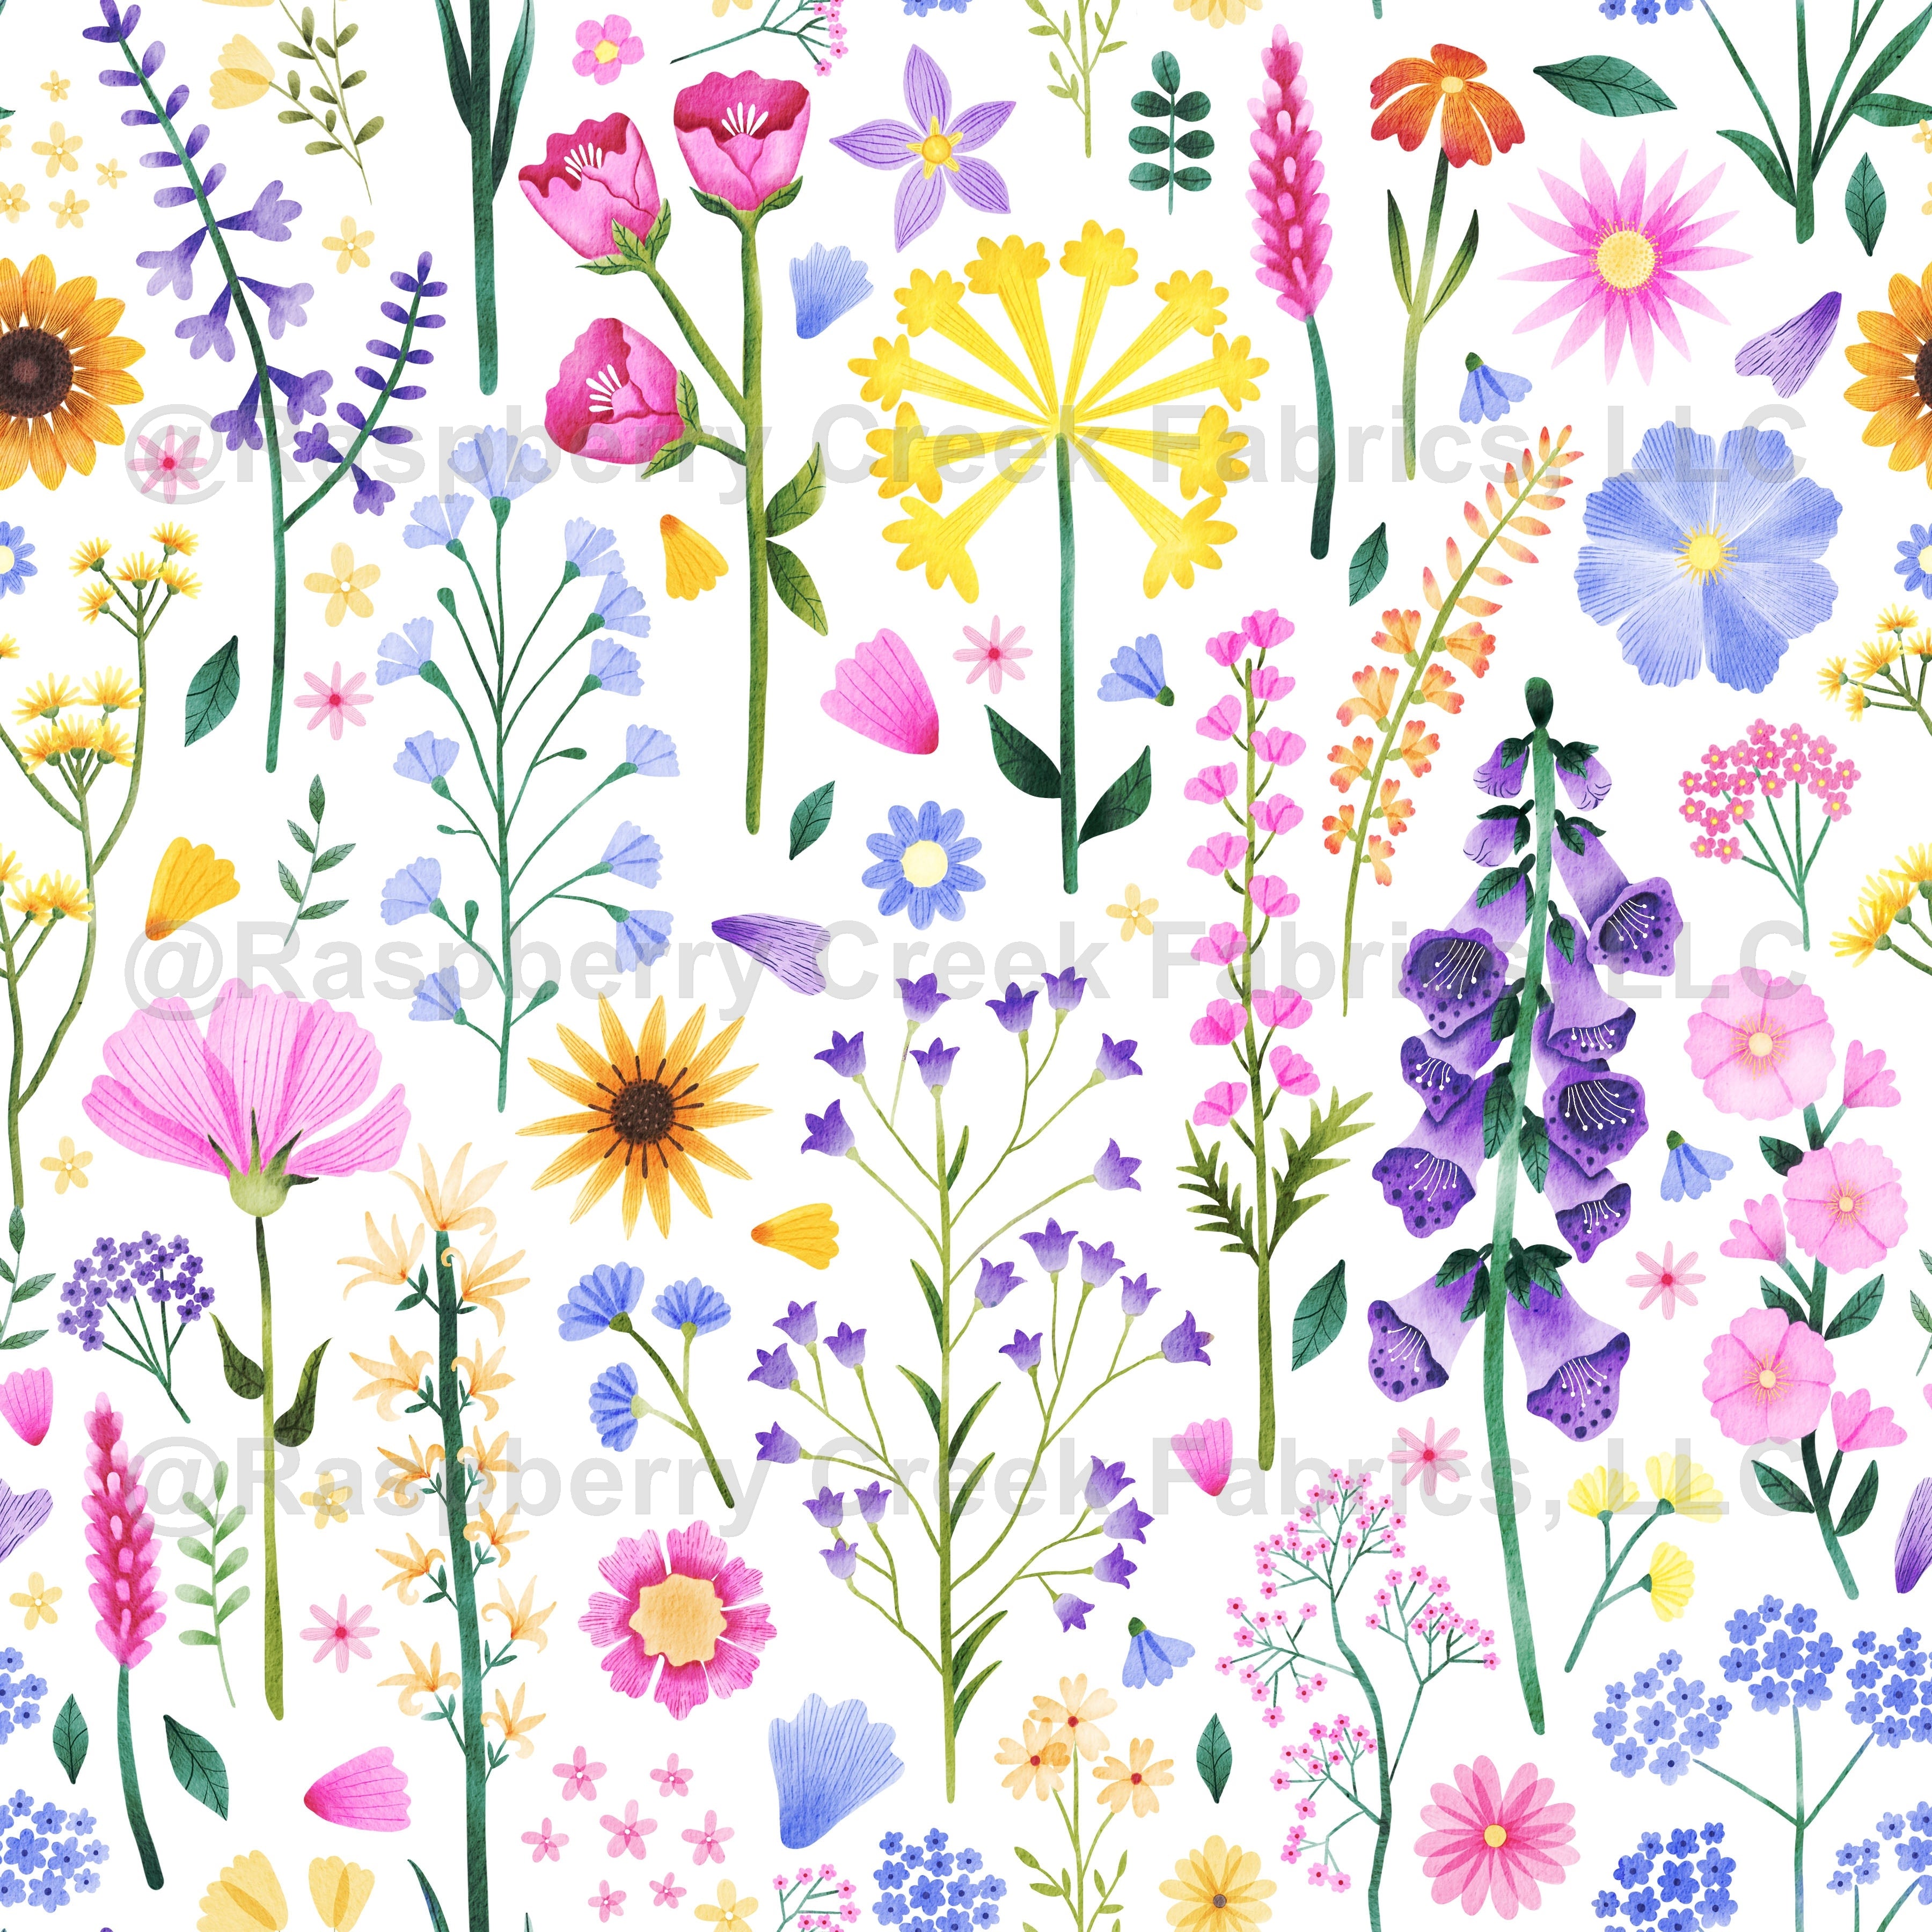 Wildflowers on White Wallpaper, Raspberry Creek Fabrics, watermarked